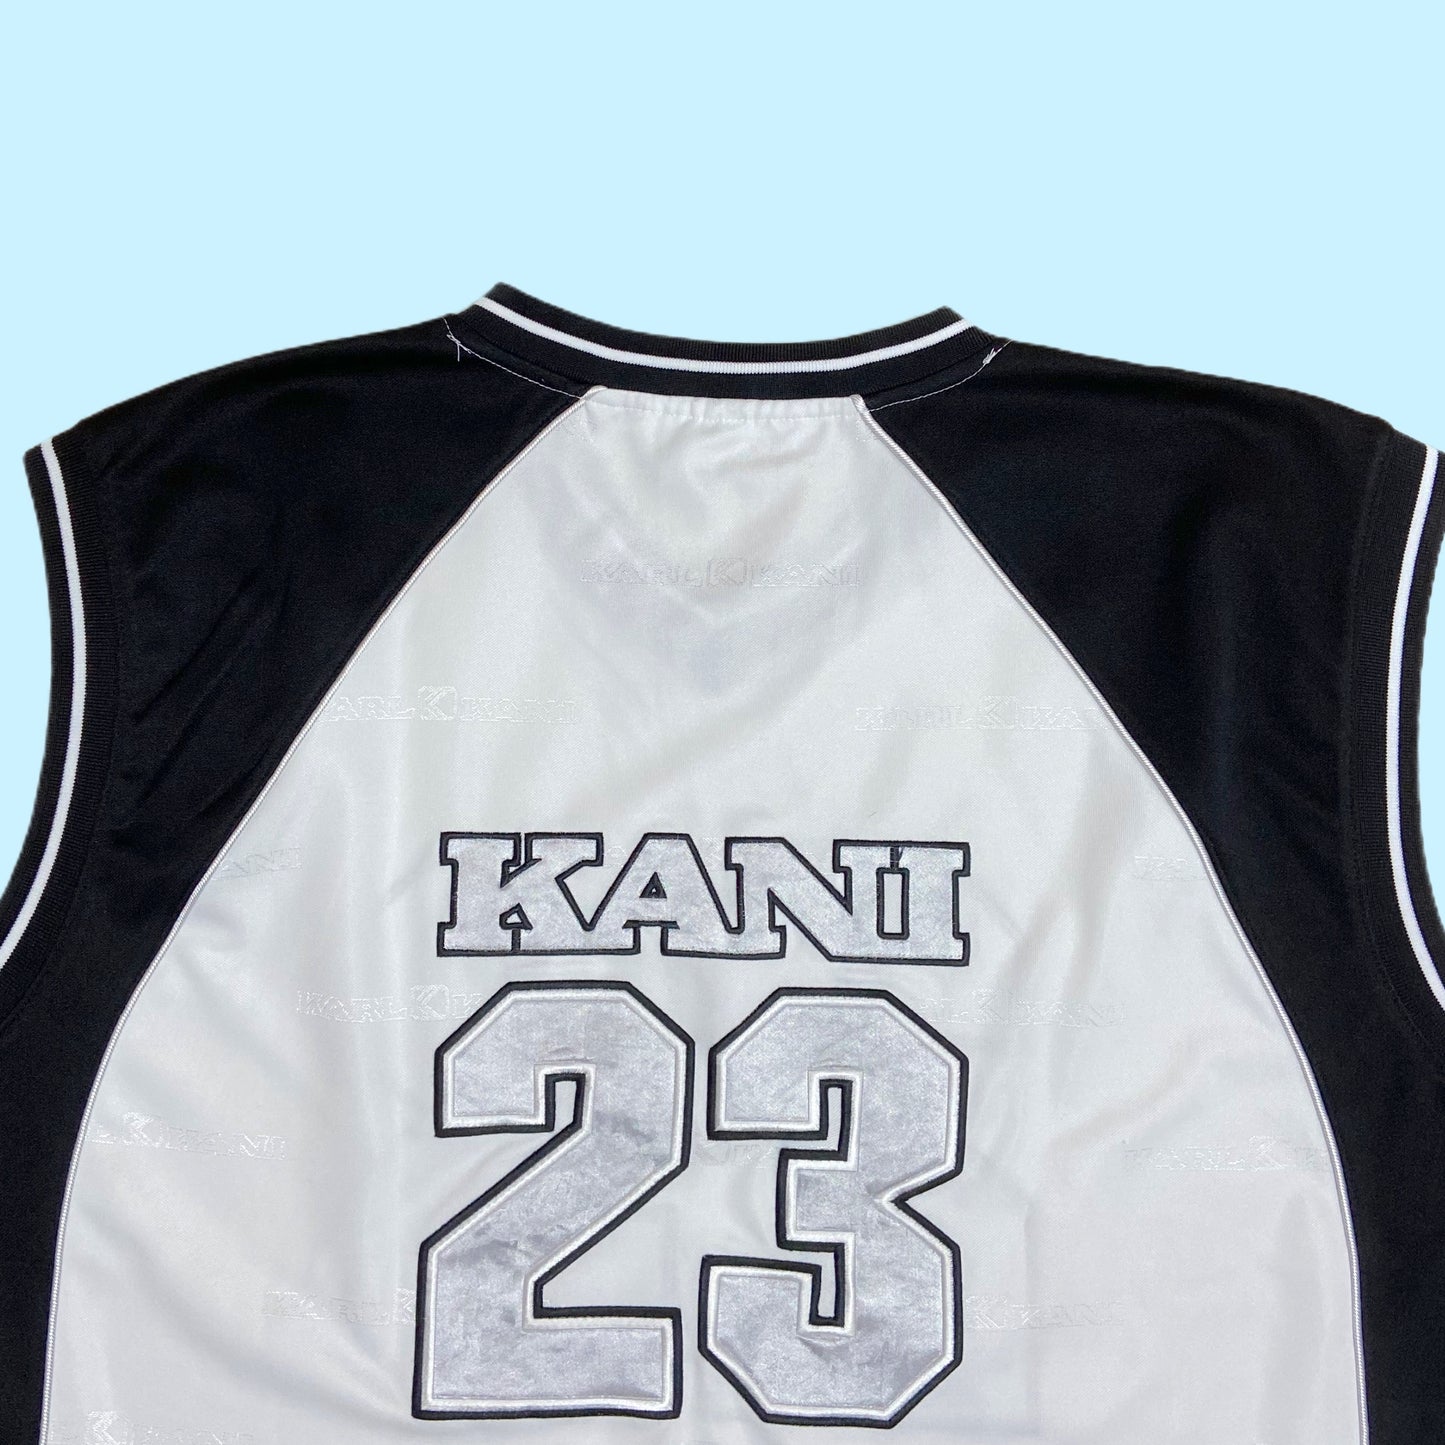 Vintage Kani Jersey - XXL